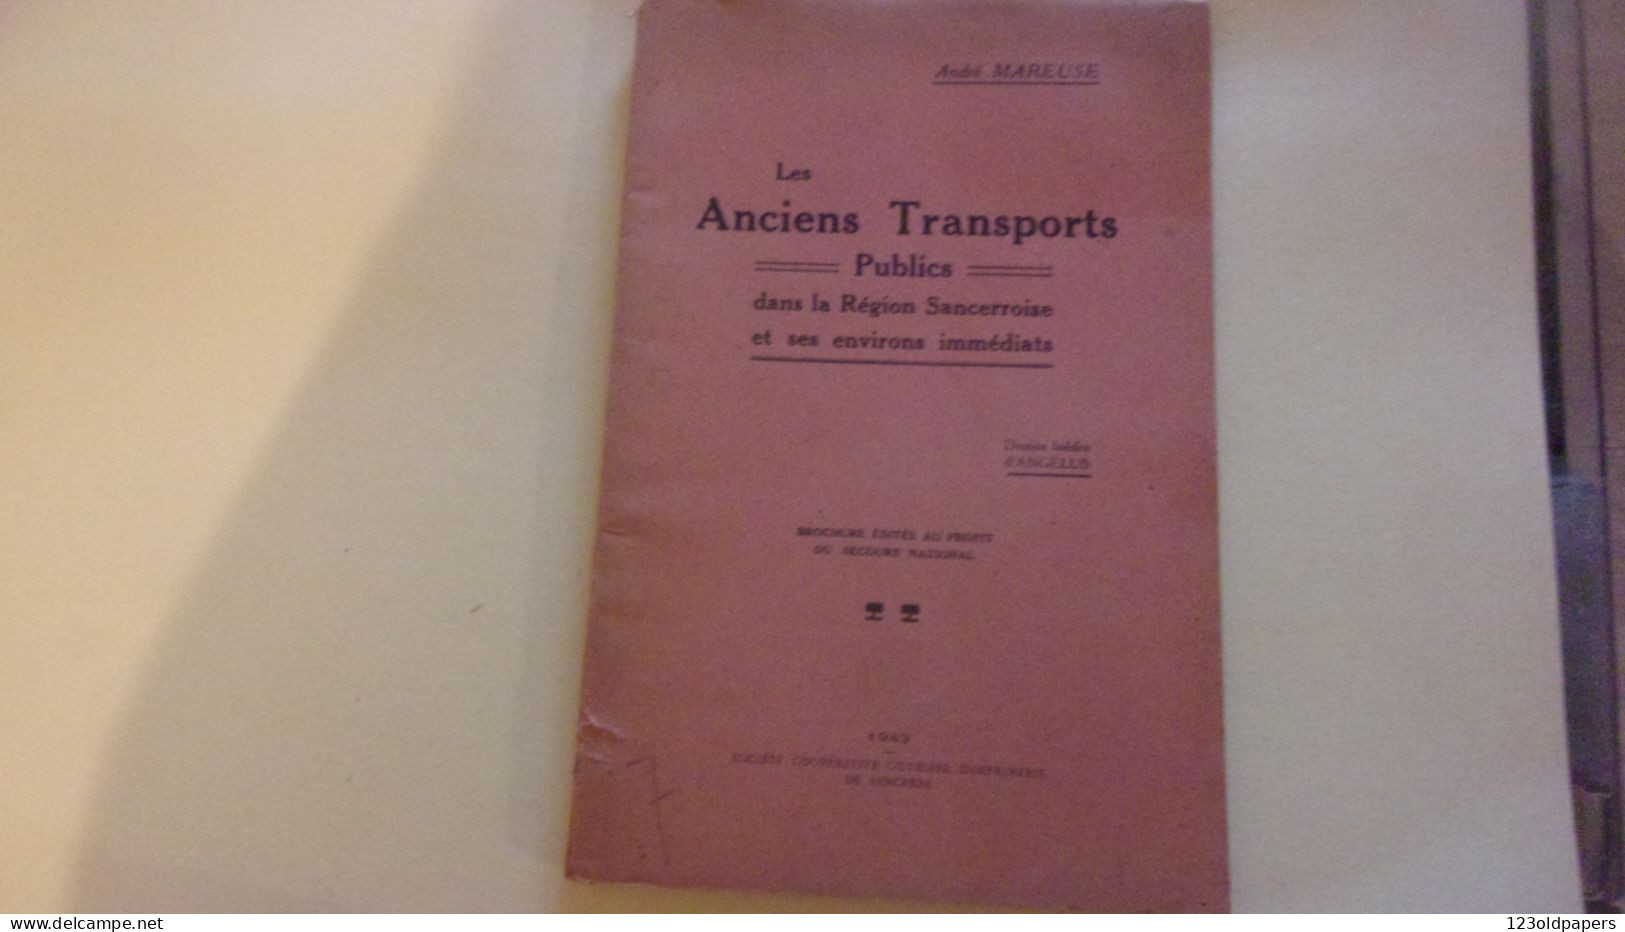 BERRY LES ANCIENS TRANSPORTS PUBLICS Dans La Region Sancerroise Et Ses Environs Immediats / MAREUSE ANDRE 1943 ENVOI - Centre - Val De Loire